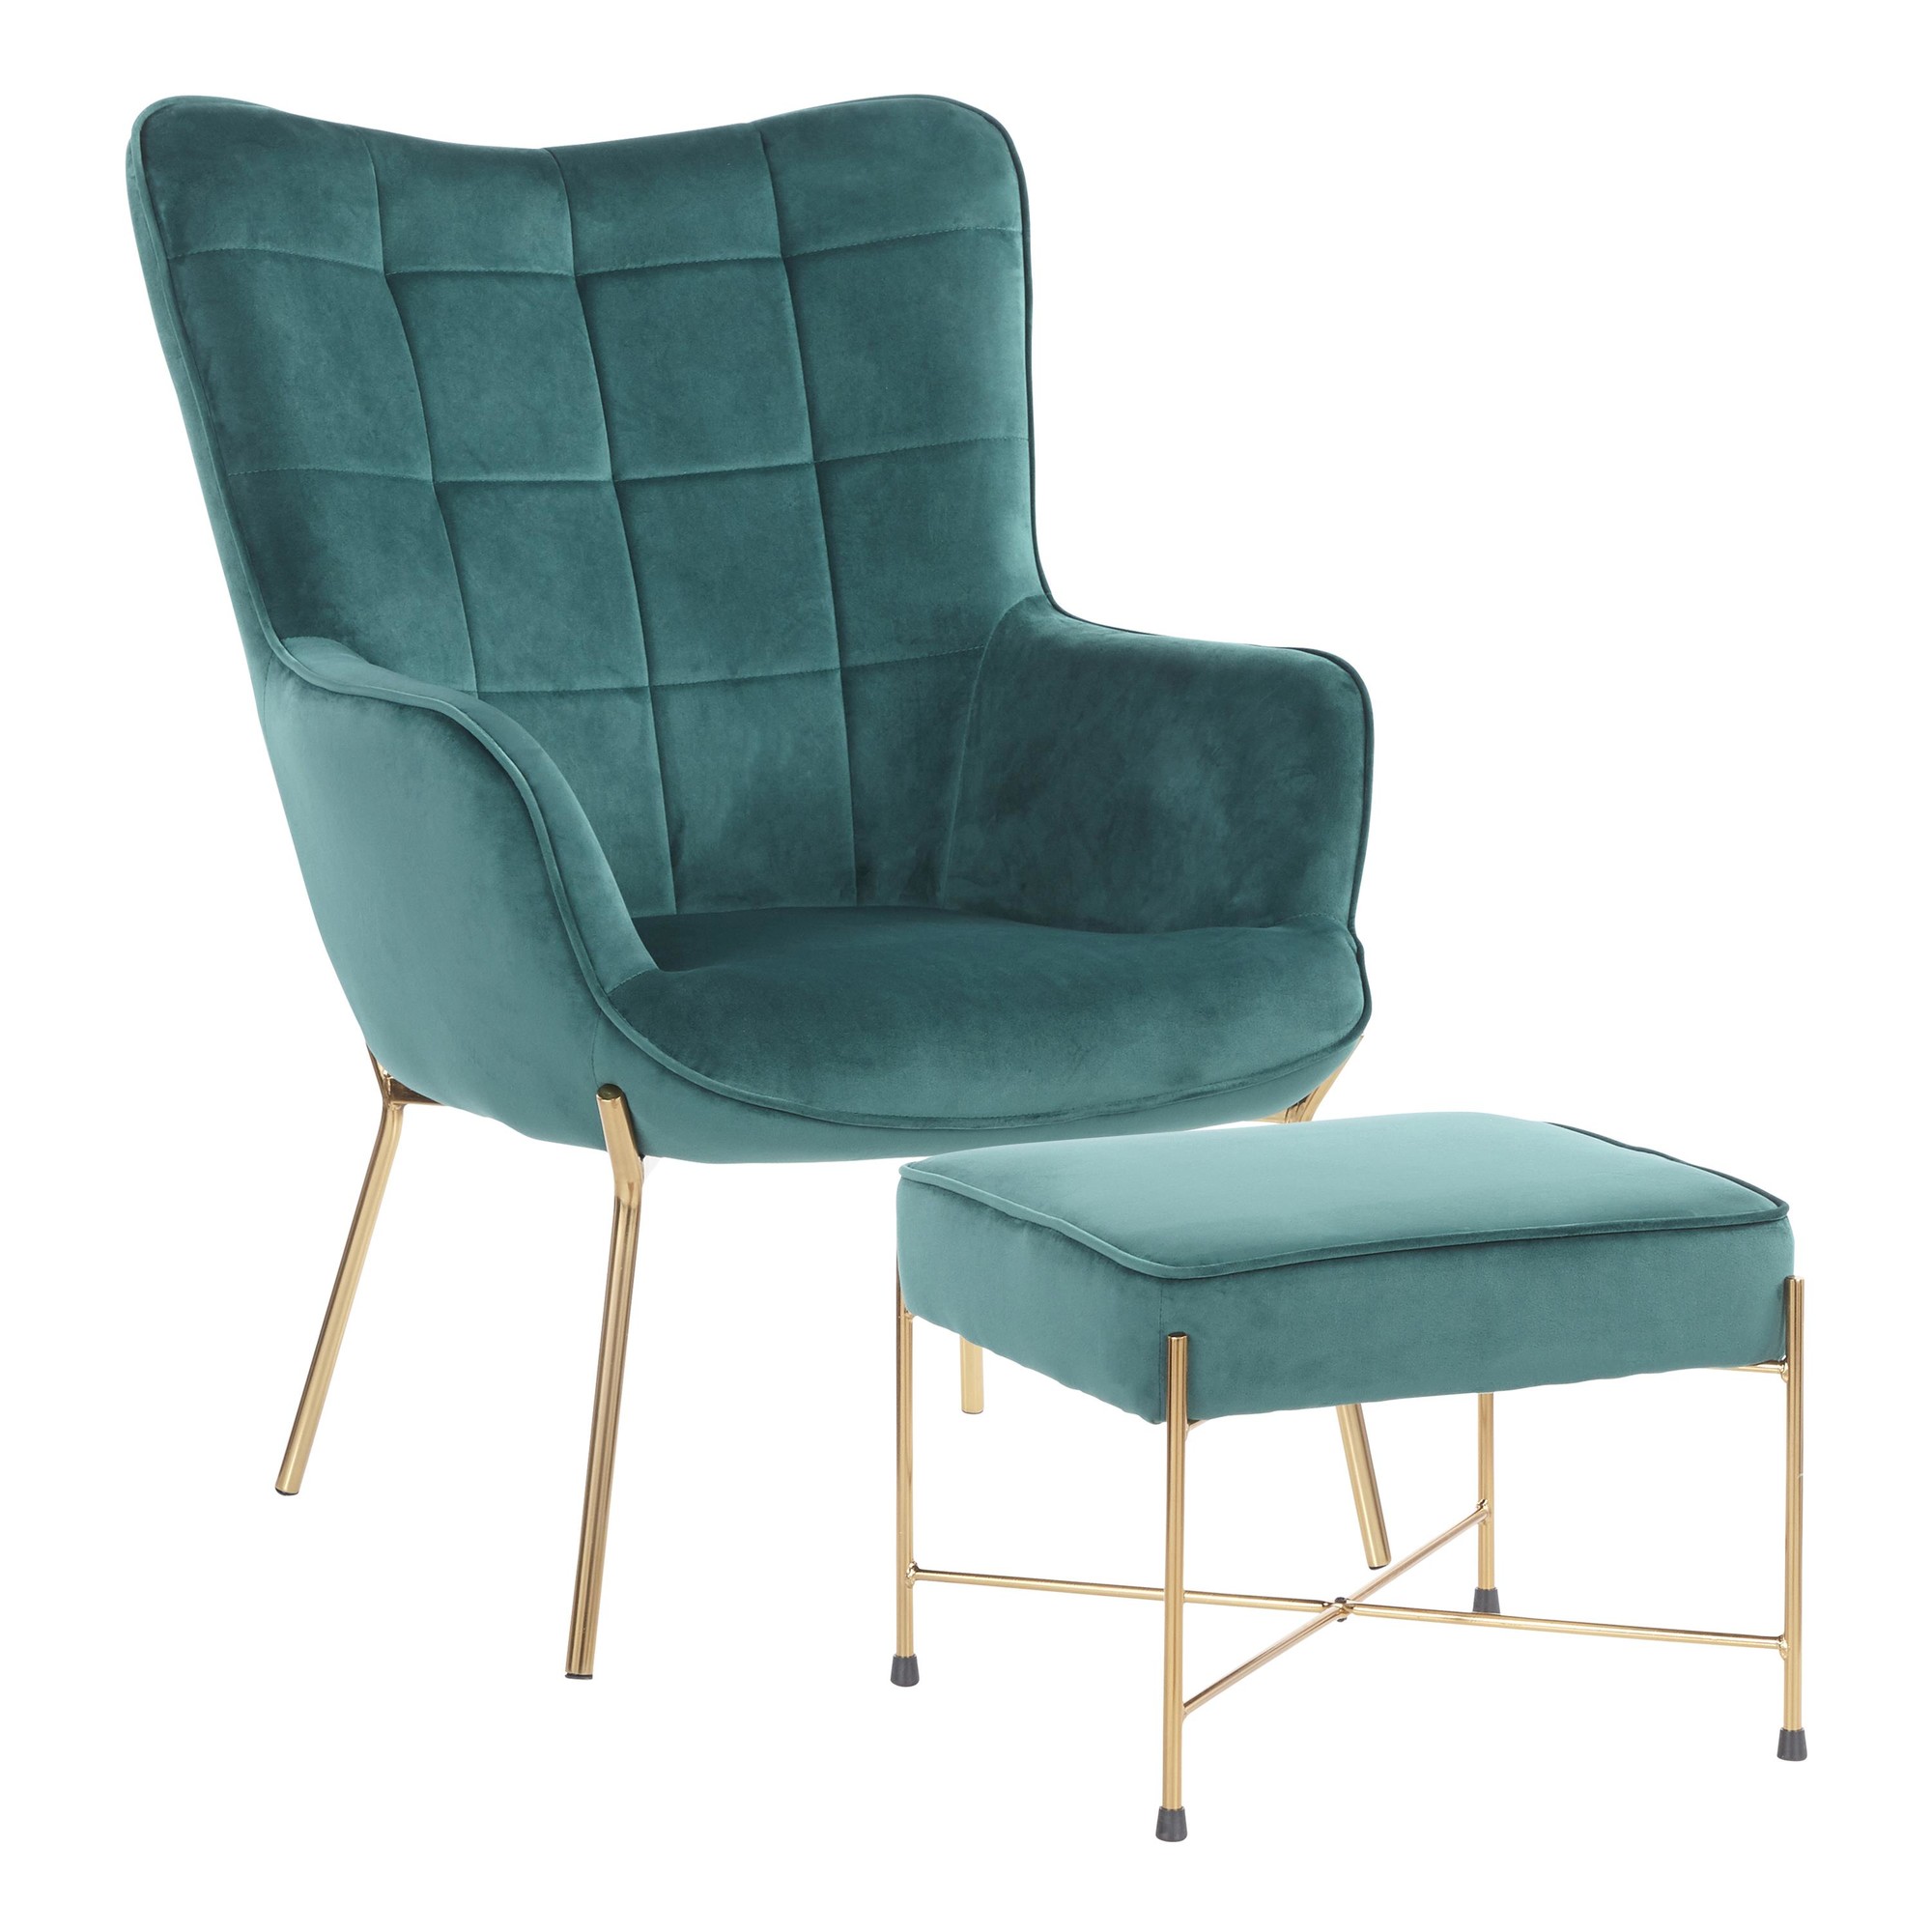 Lumisource Lounge Chair Ottoman Set